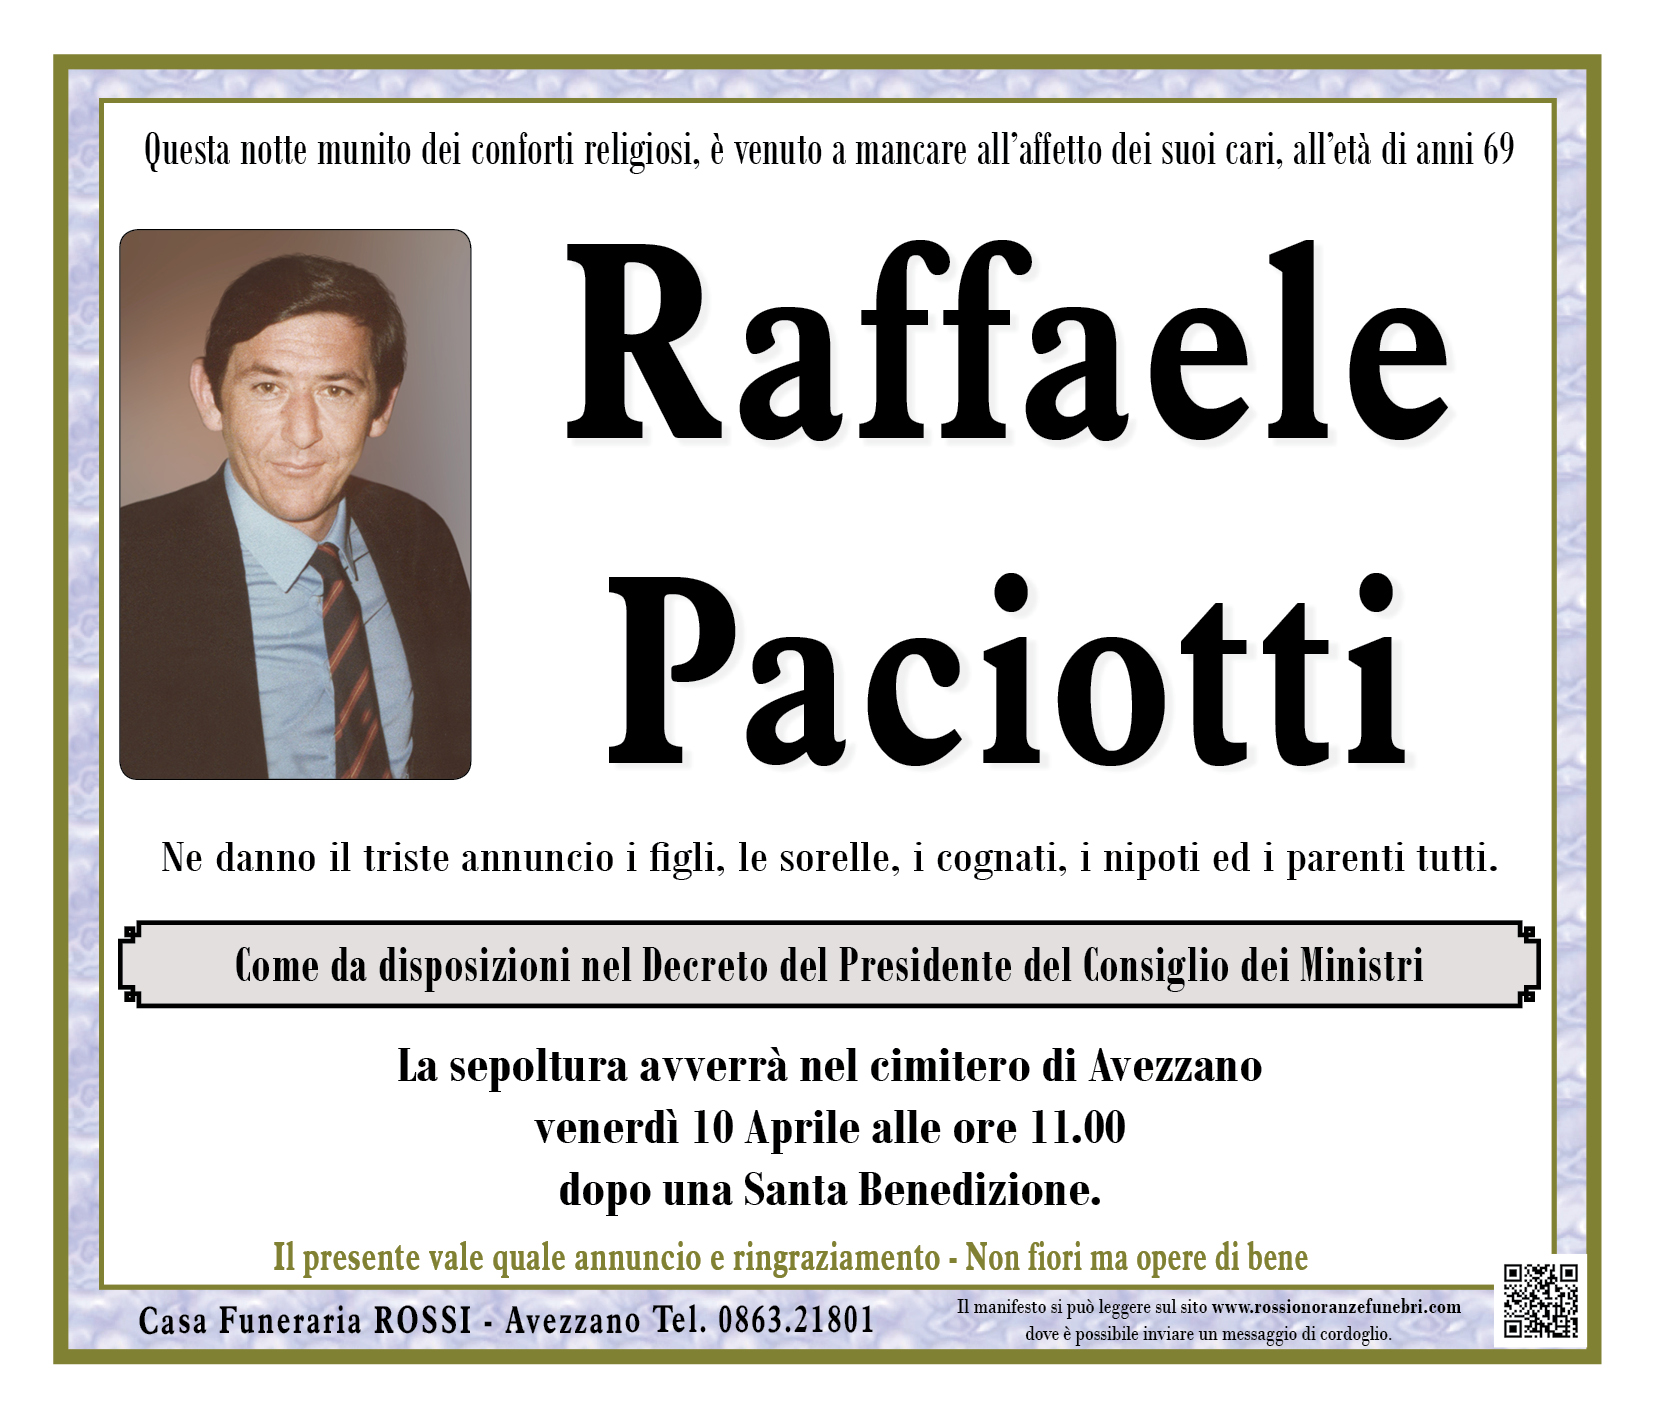 Raffaele Paciotti